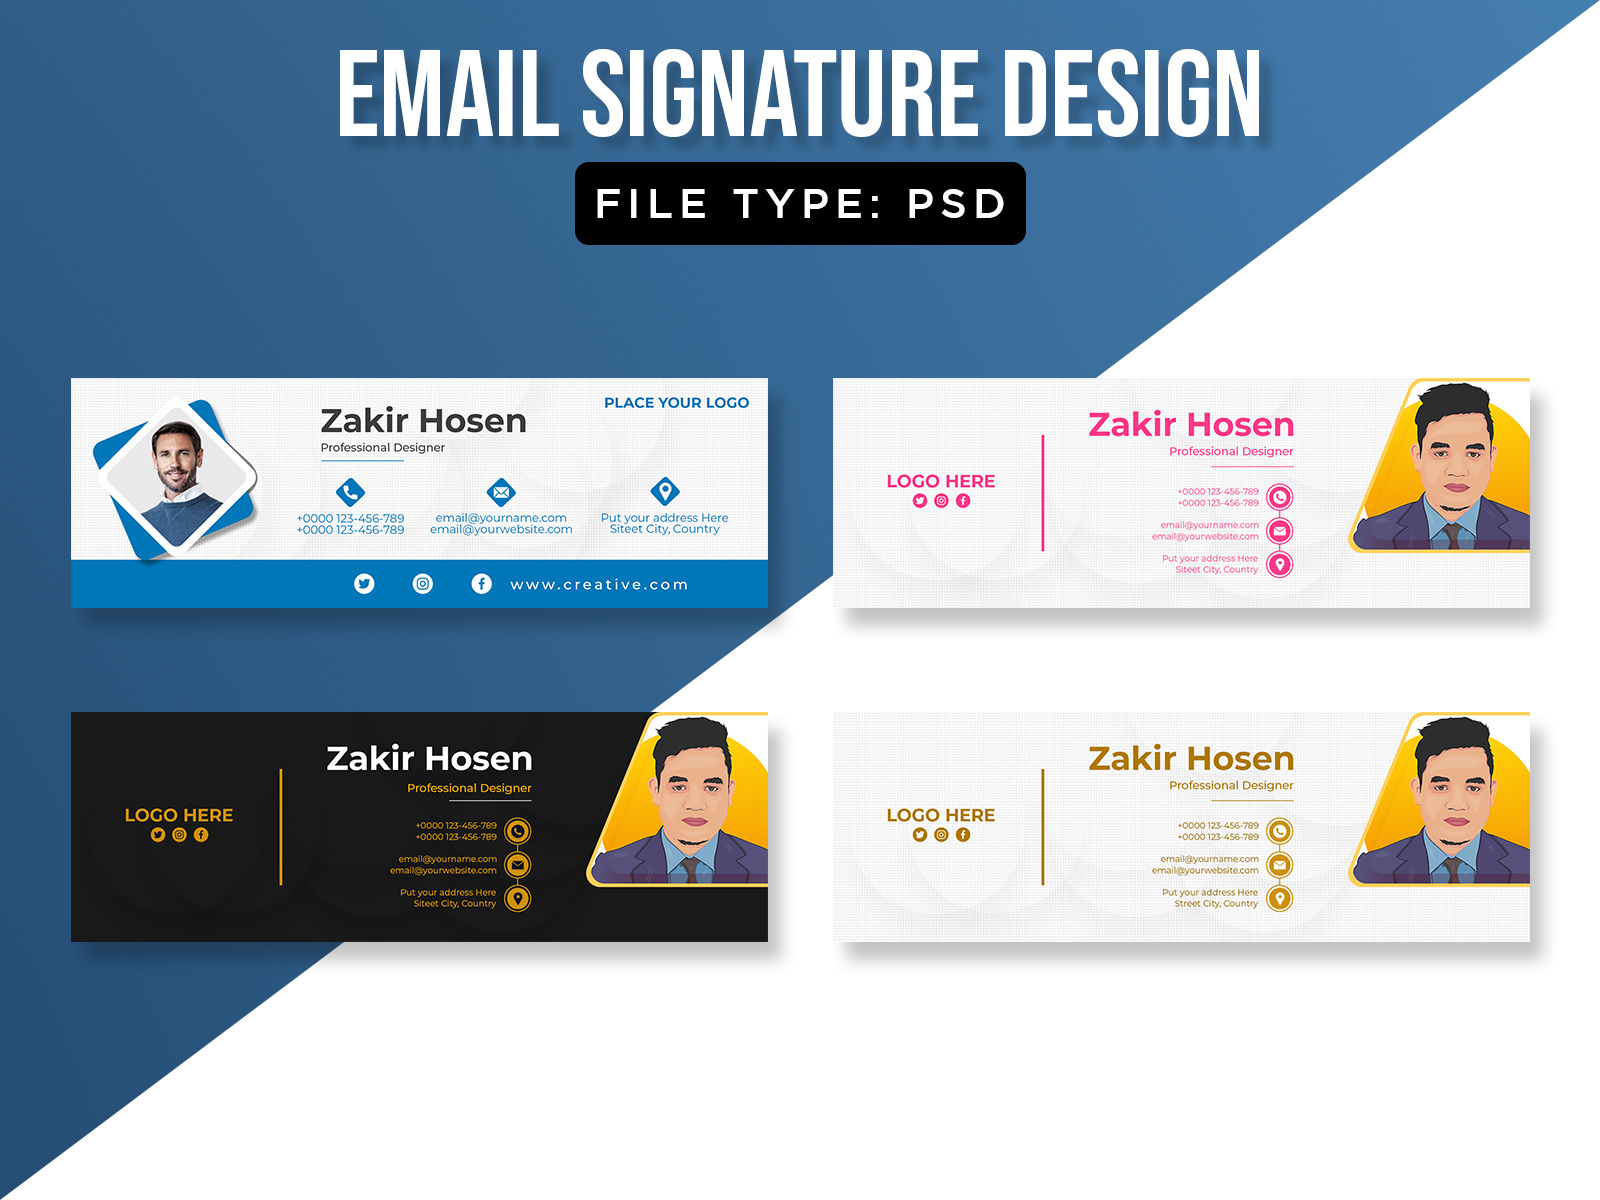 Email Signature Template For Designer By ZAKIR HOSEN On Dribbble